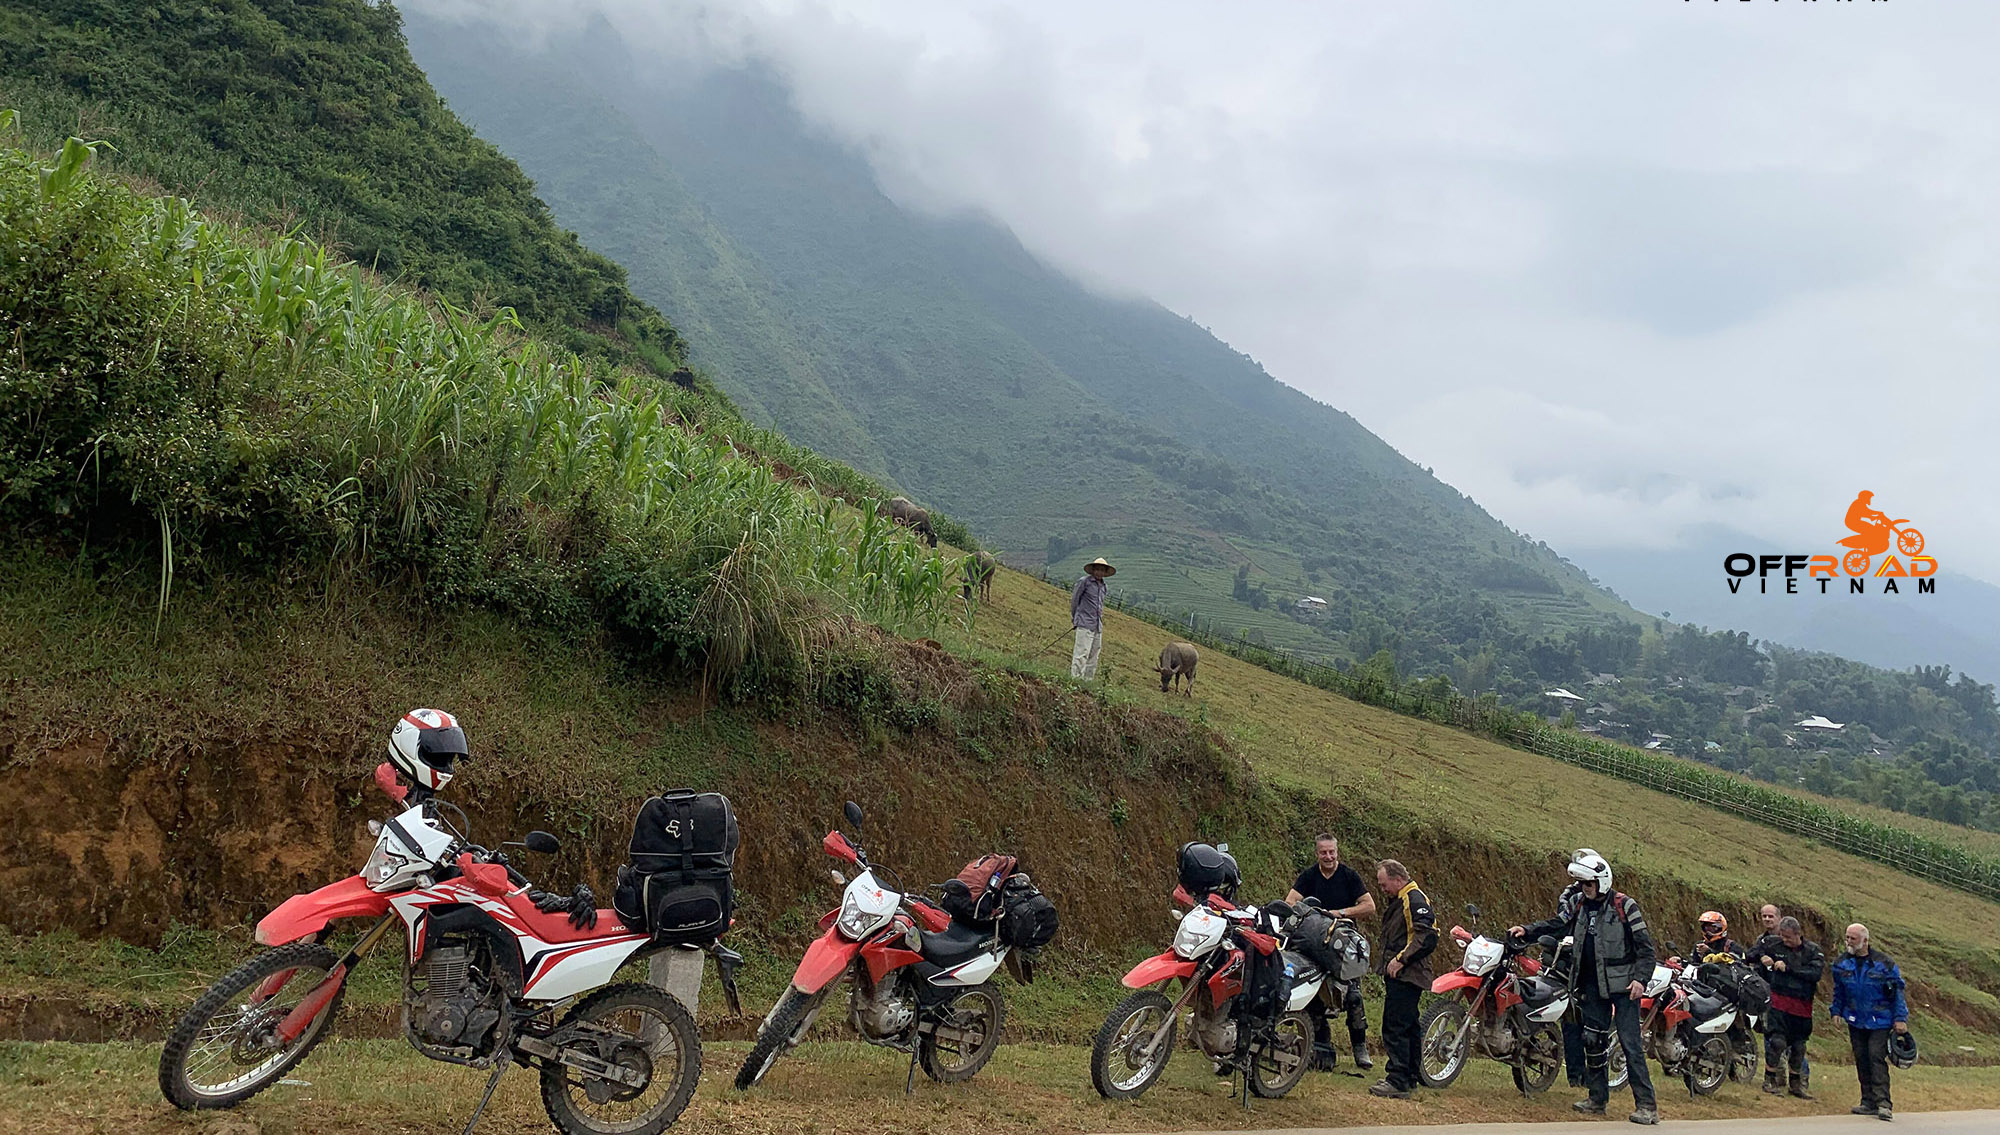 Offroad Vietnam dauert professionell geführte Motorrad-touren & self-guided Motorradreisen von Hanoi durch Nord-Vietnam, Honda 150-250ccm